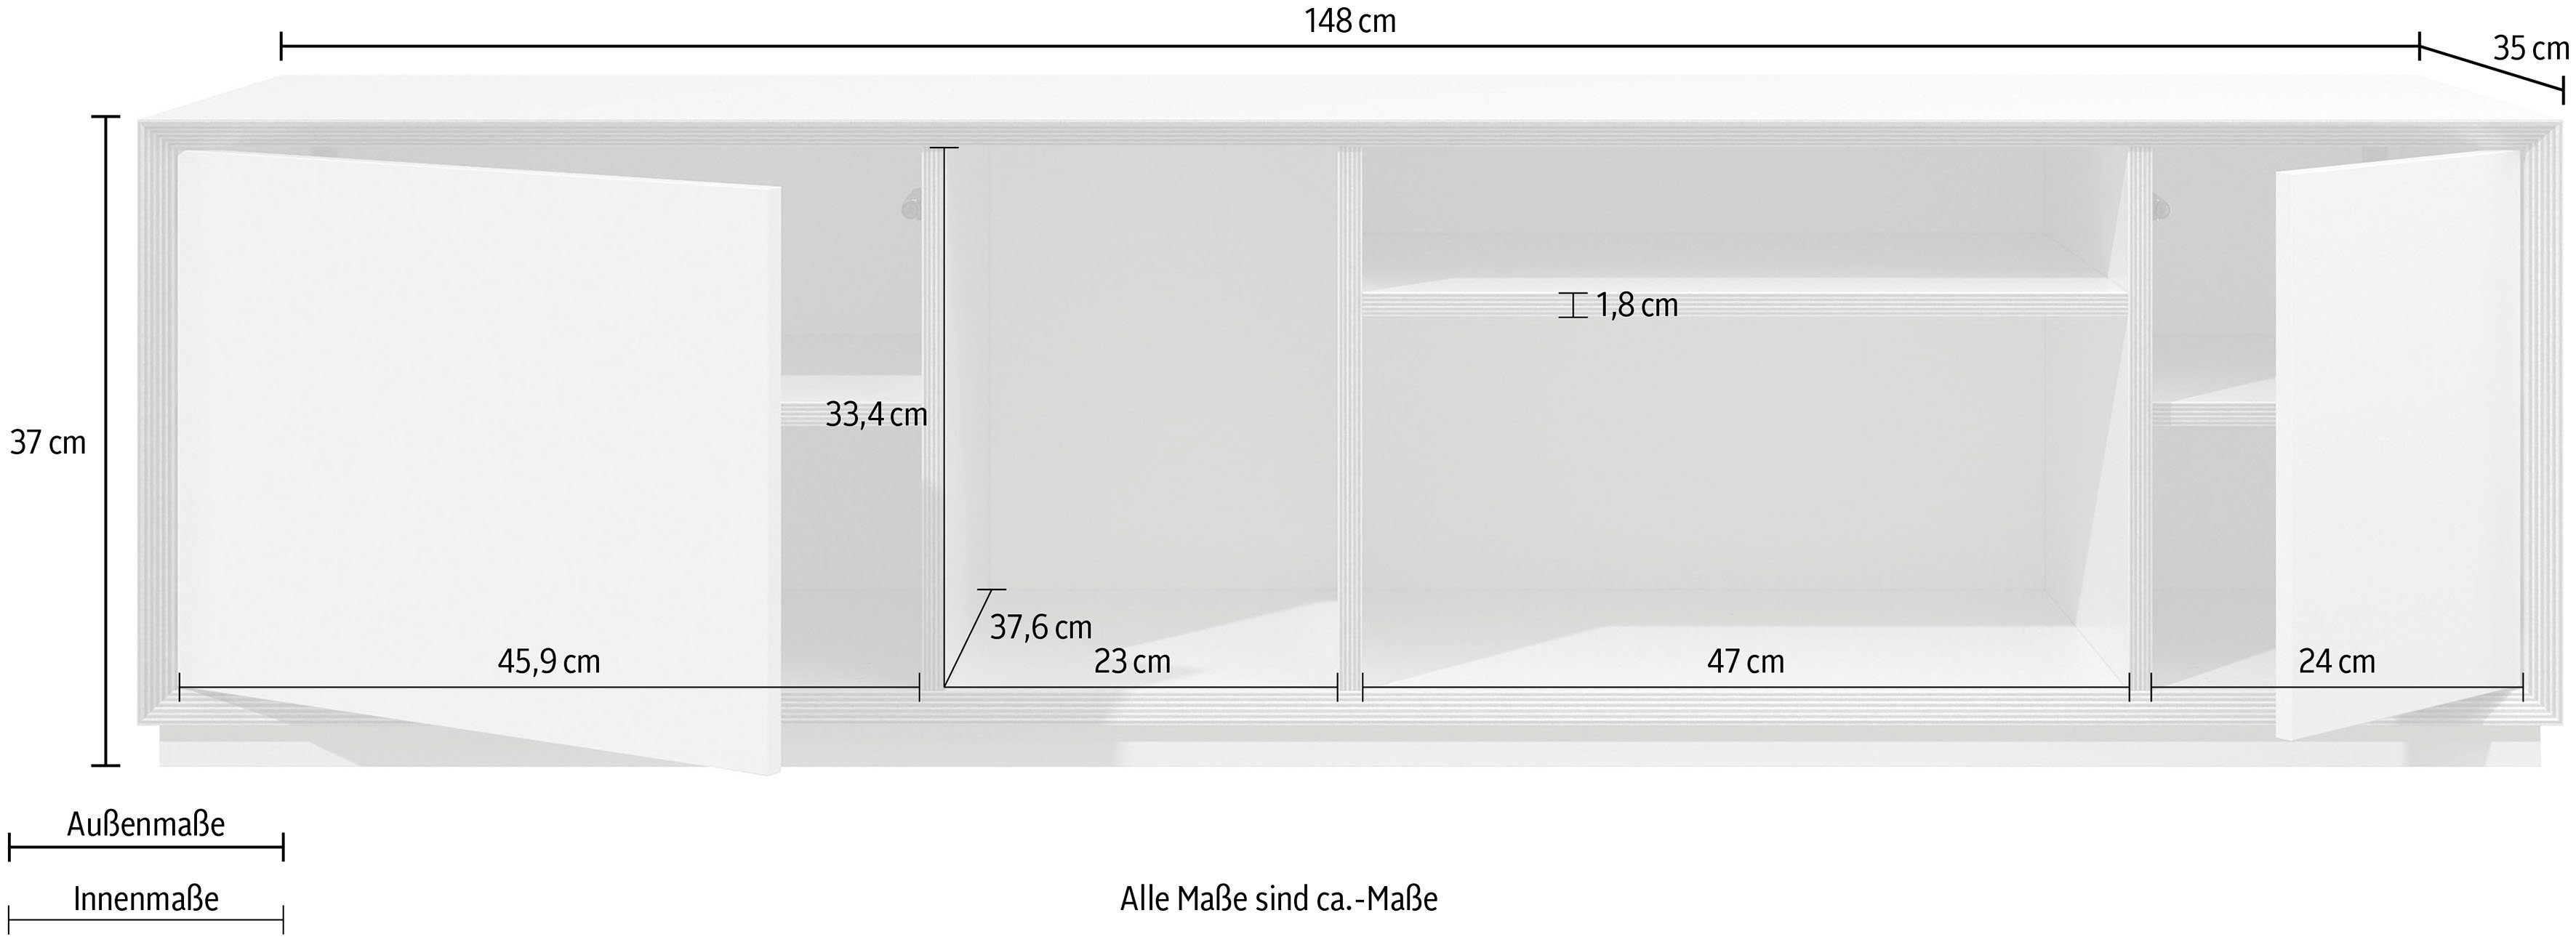 Müller SMALL LIVING Lowboard VERTIKO birke passend zur Serie weiß weiß | WIDE, birke »VERTIKO«